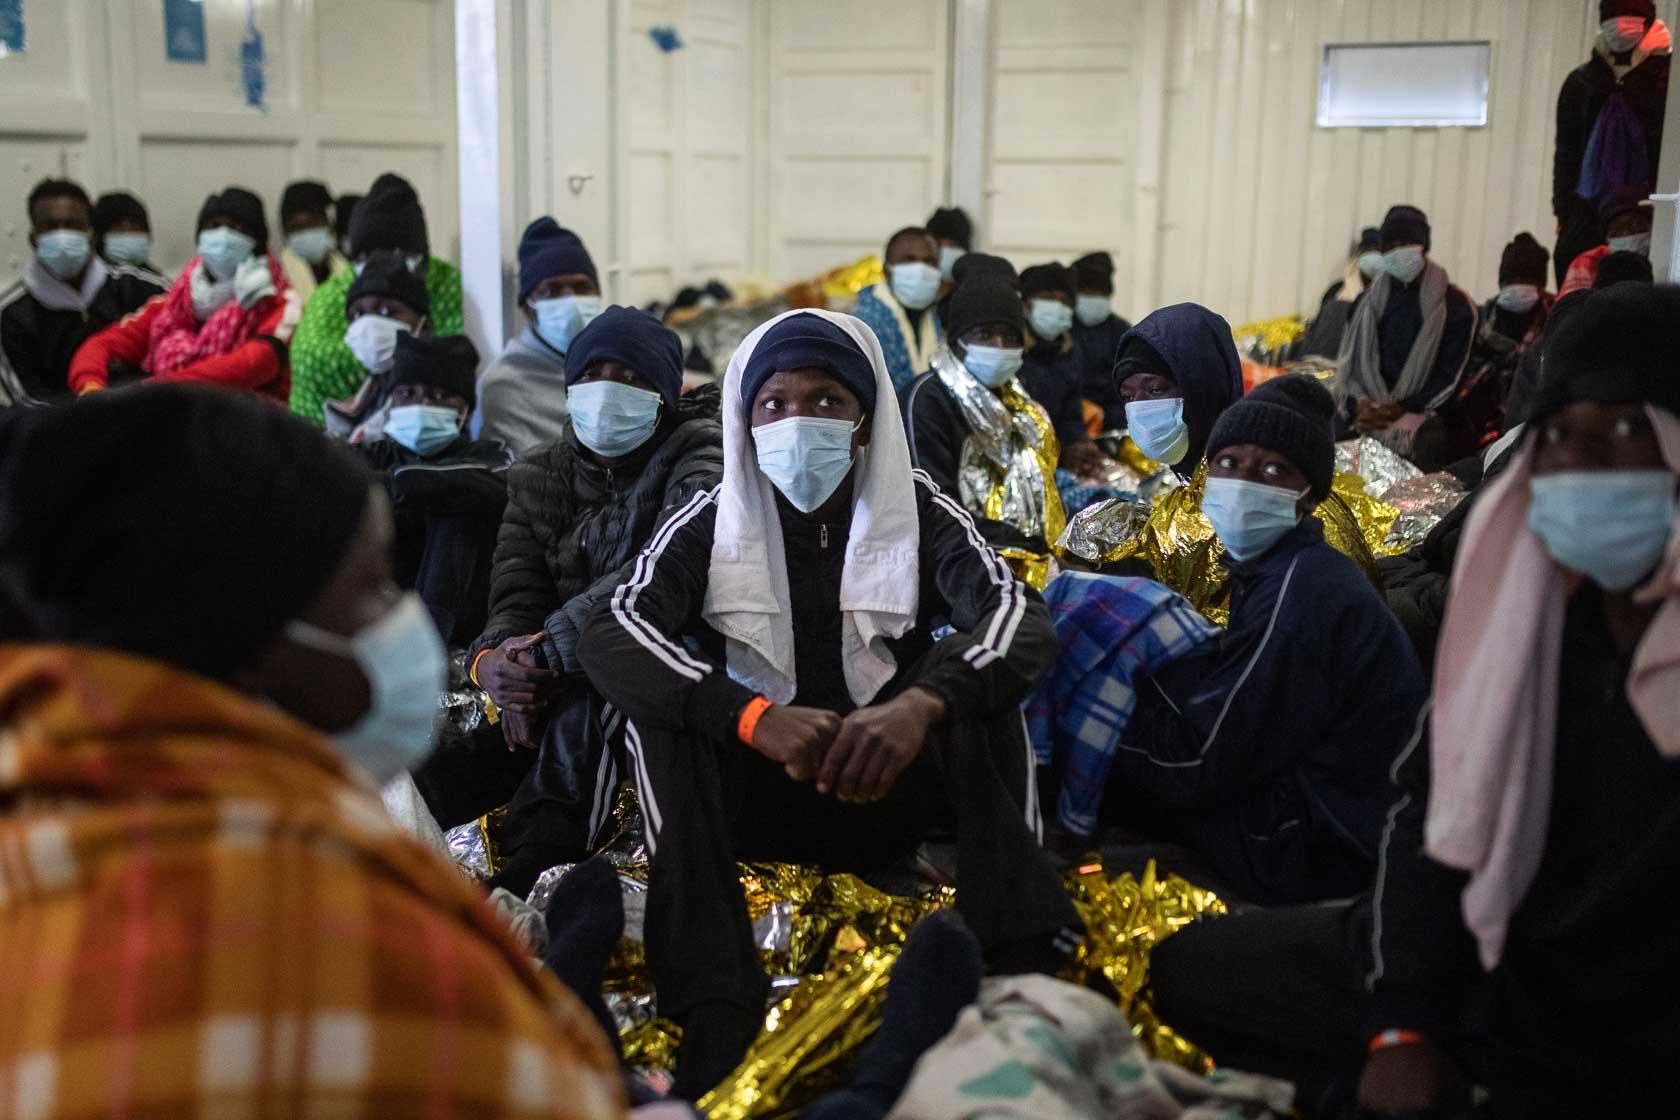 Des rescapés écoutent des consignes liées à la vie à bord dans le « men’s shelter » où dorment tous les hommes secourus. Méditerranée Centrale. Mars 2021